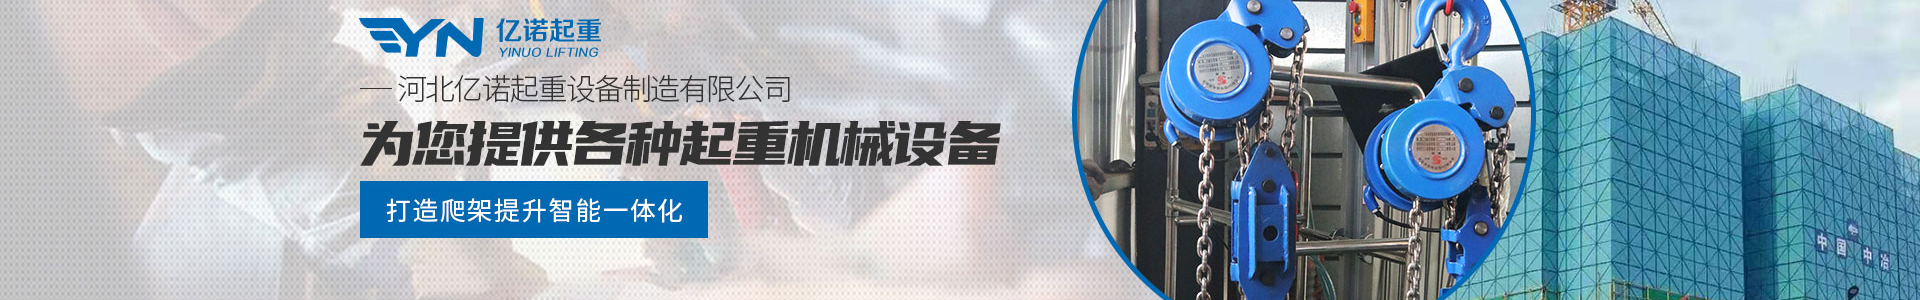 DH型环链电动葫芦_产品展示_亿诺起重有限公司